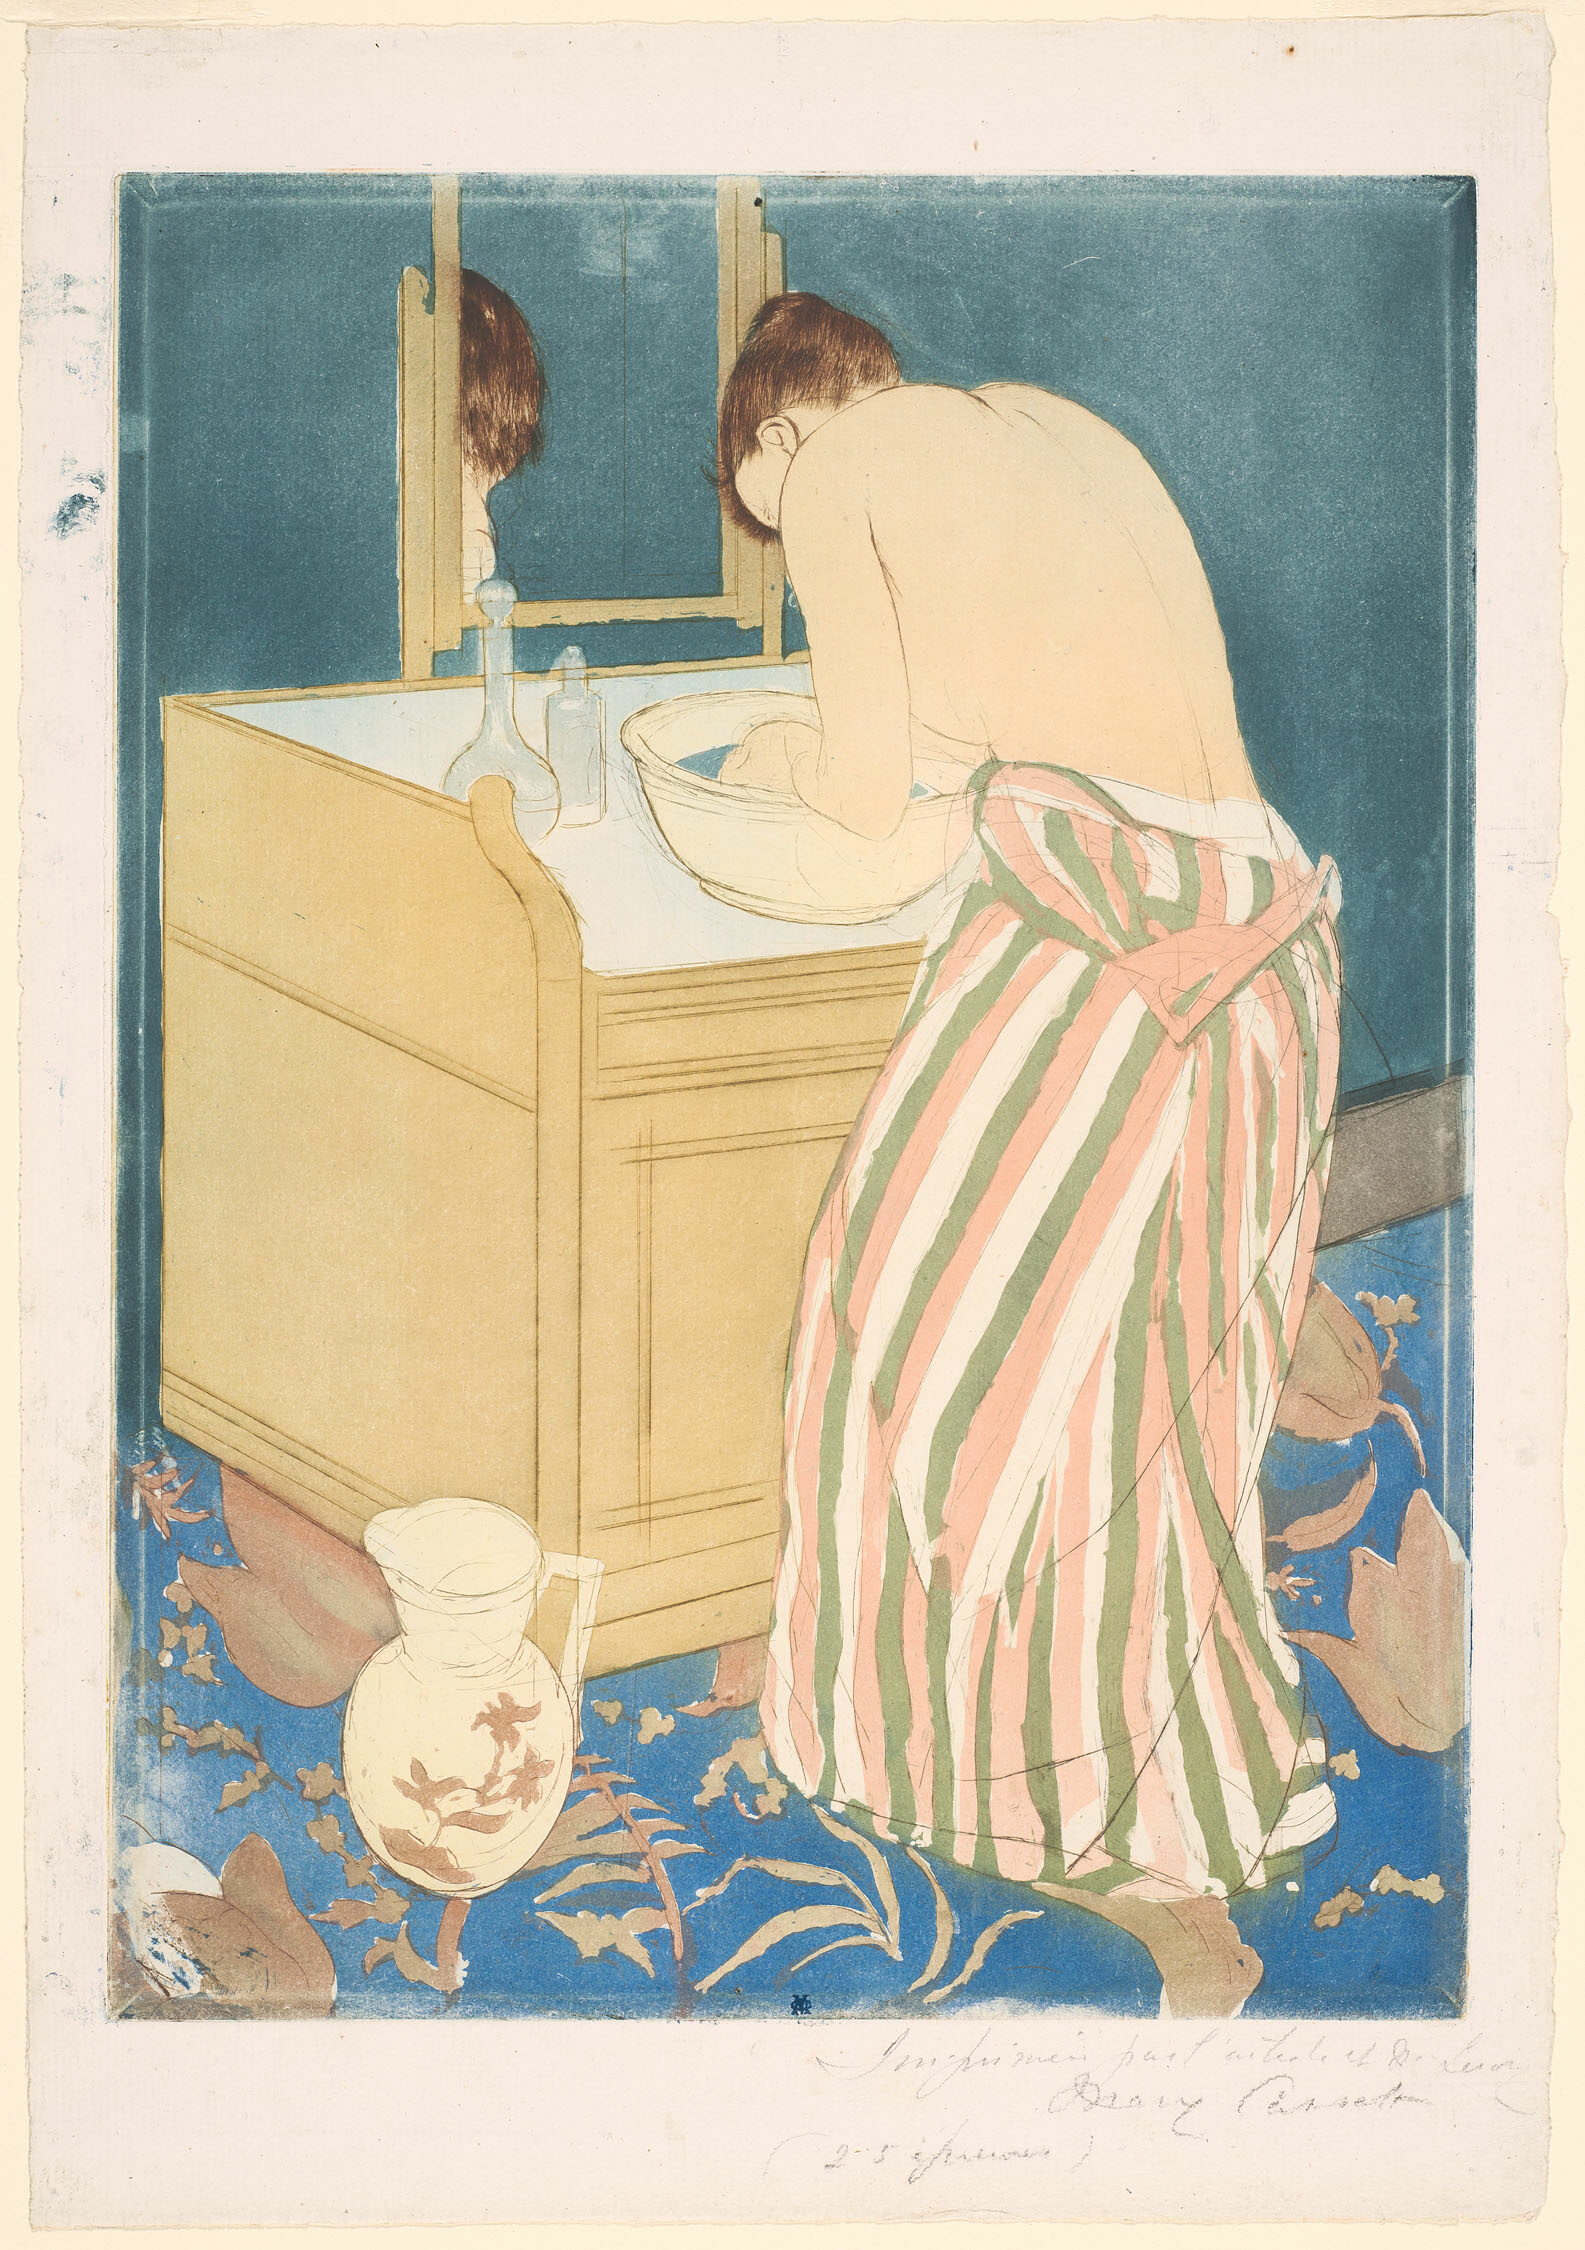 沐浴する女性 by Mary Cassatt - 1890-1891年 - 36.4 x 26.7 cm 